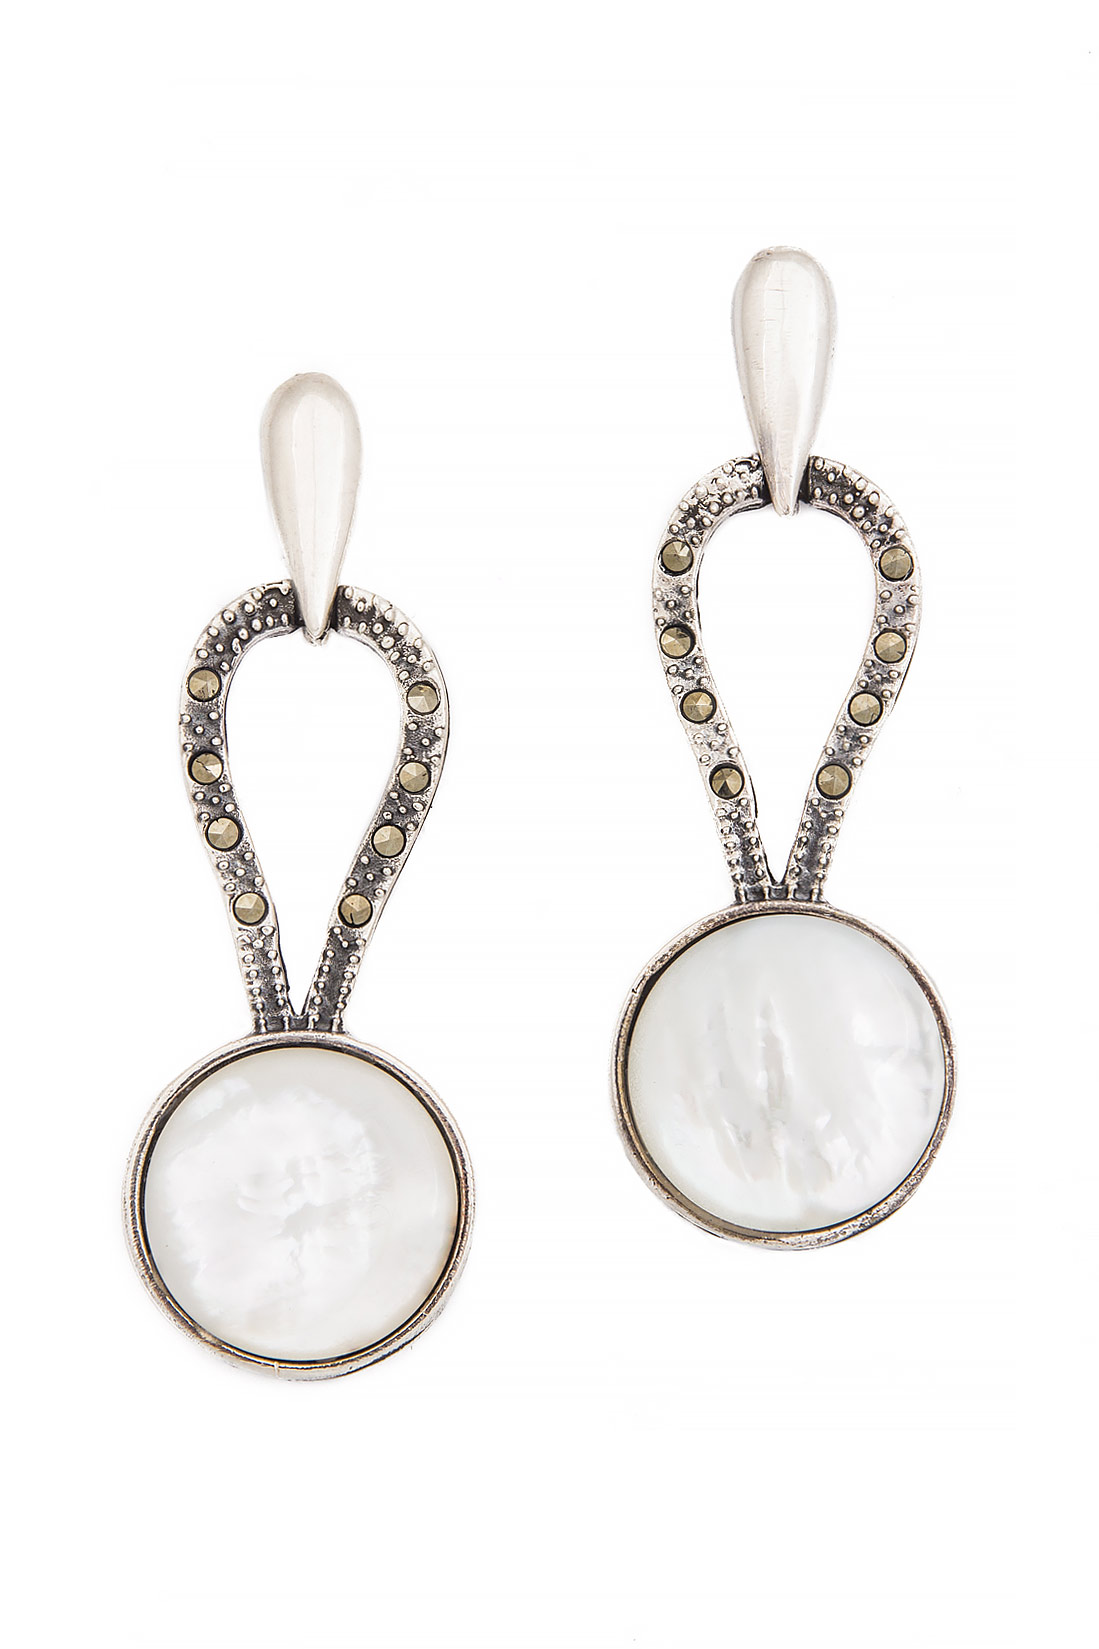 'Bohemian Rhapsody' silver earrings with pearls Obsidian image 0